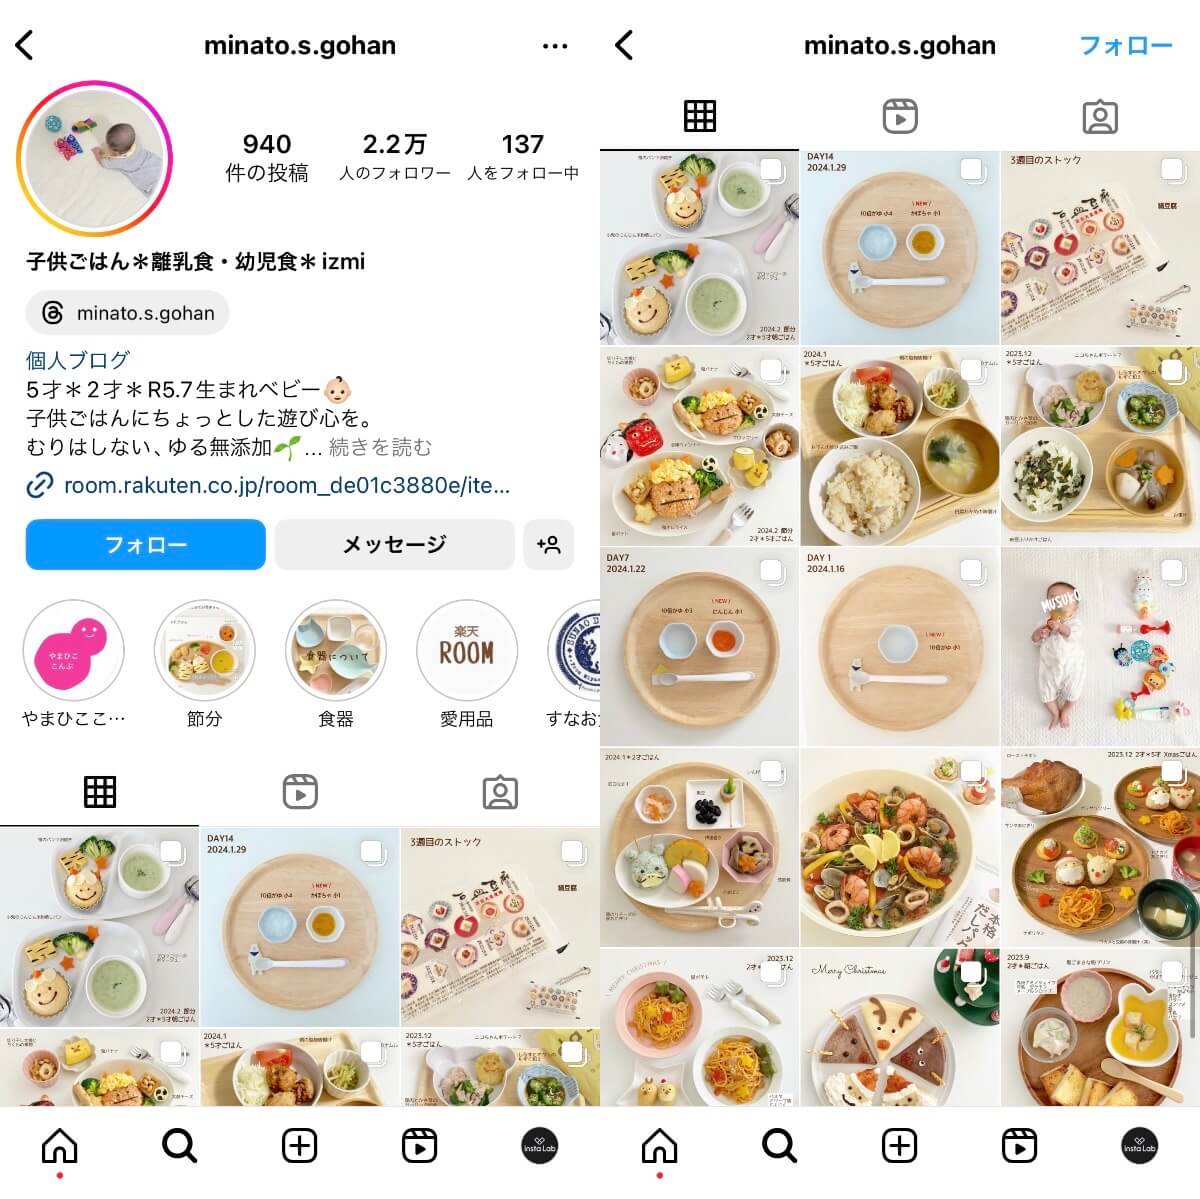 instagram-account-minato-s-gohan